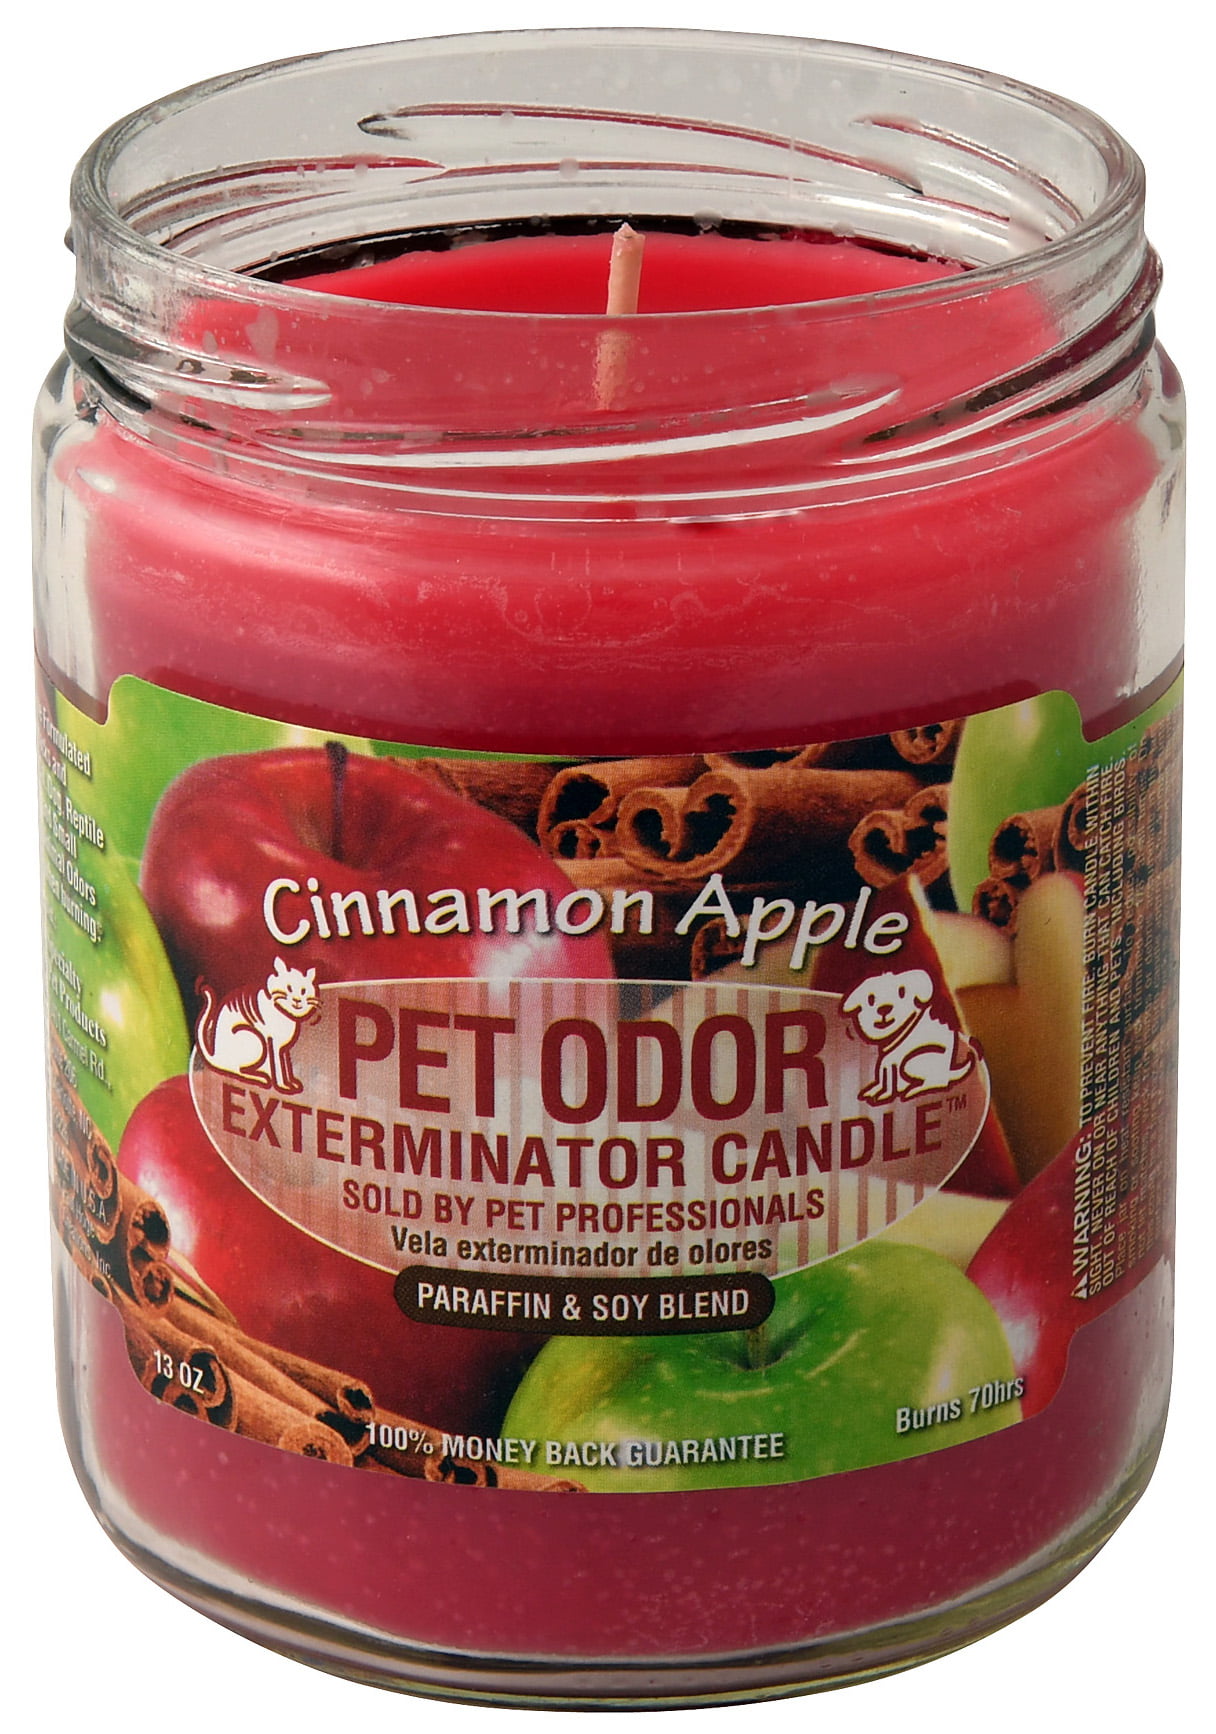 Pet Odor Exterminator Candle, Cinnamon Apple - Walmart.com